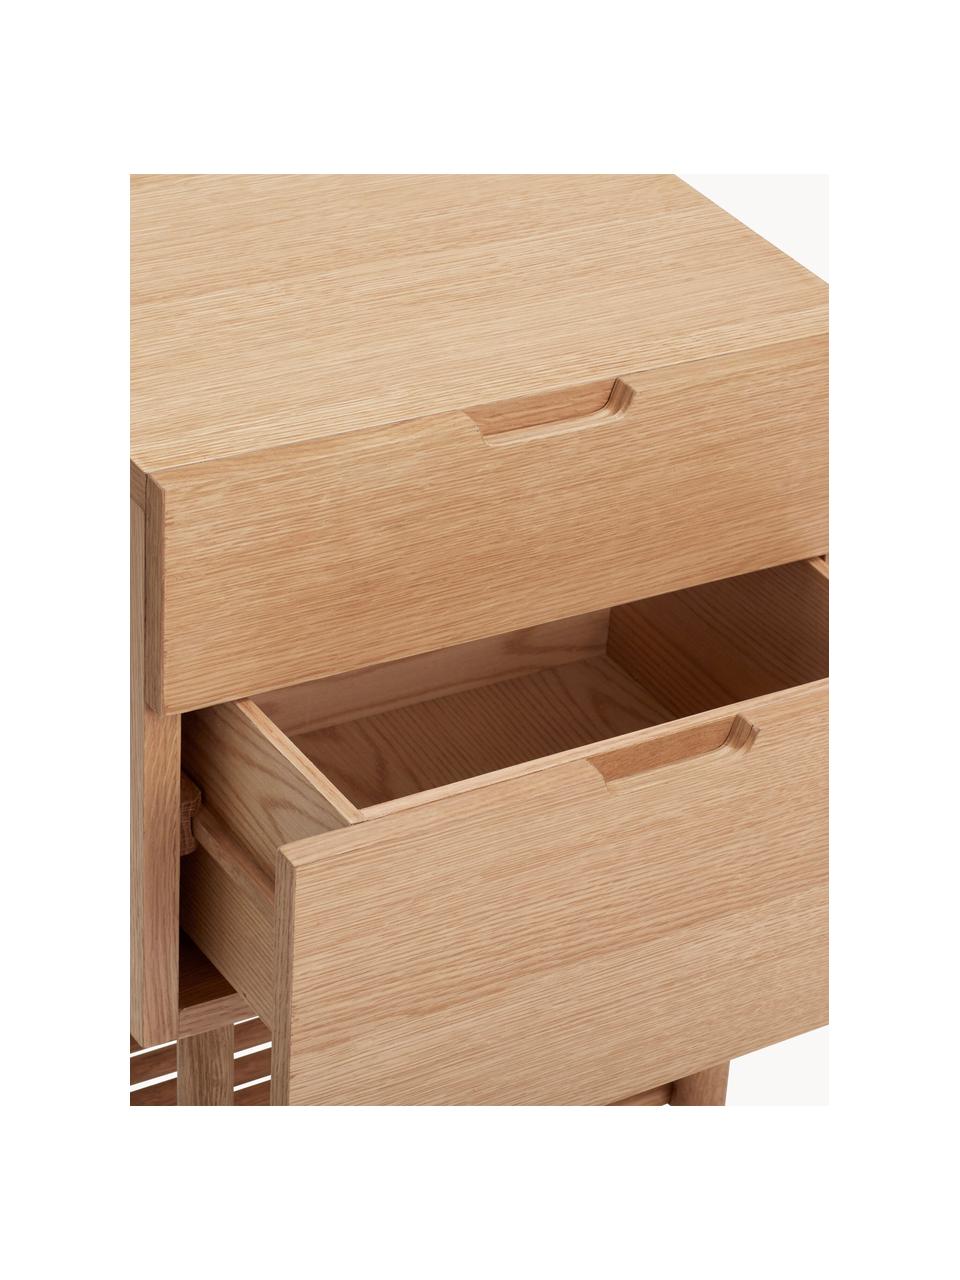 Holz-Nachttisch Acorn, Eichenholzfurnier, Eichenholz

Dieses Produkt wird aus nachhaltig gewonnenem, FSC®-zertifiziertem Holz gefertigt., Eichenholz, B 40 x H 70 cm